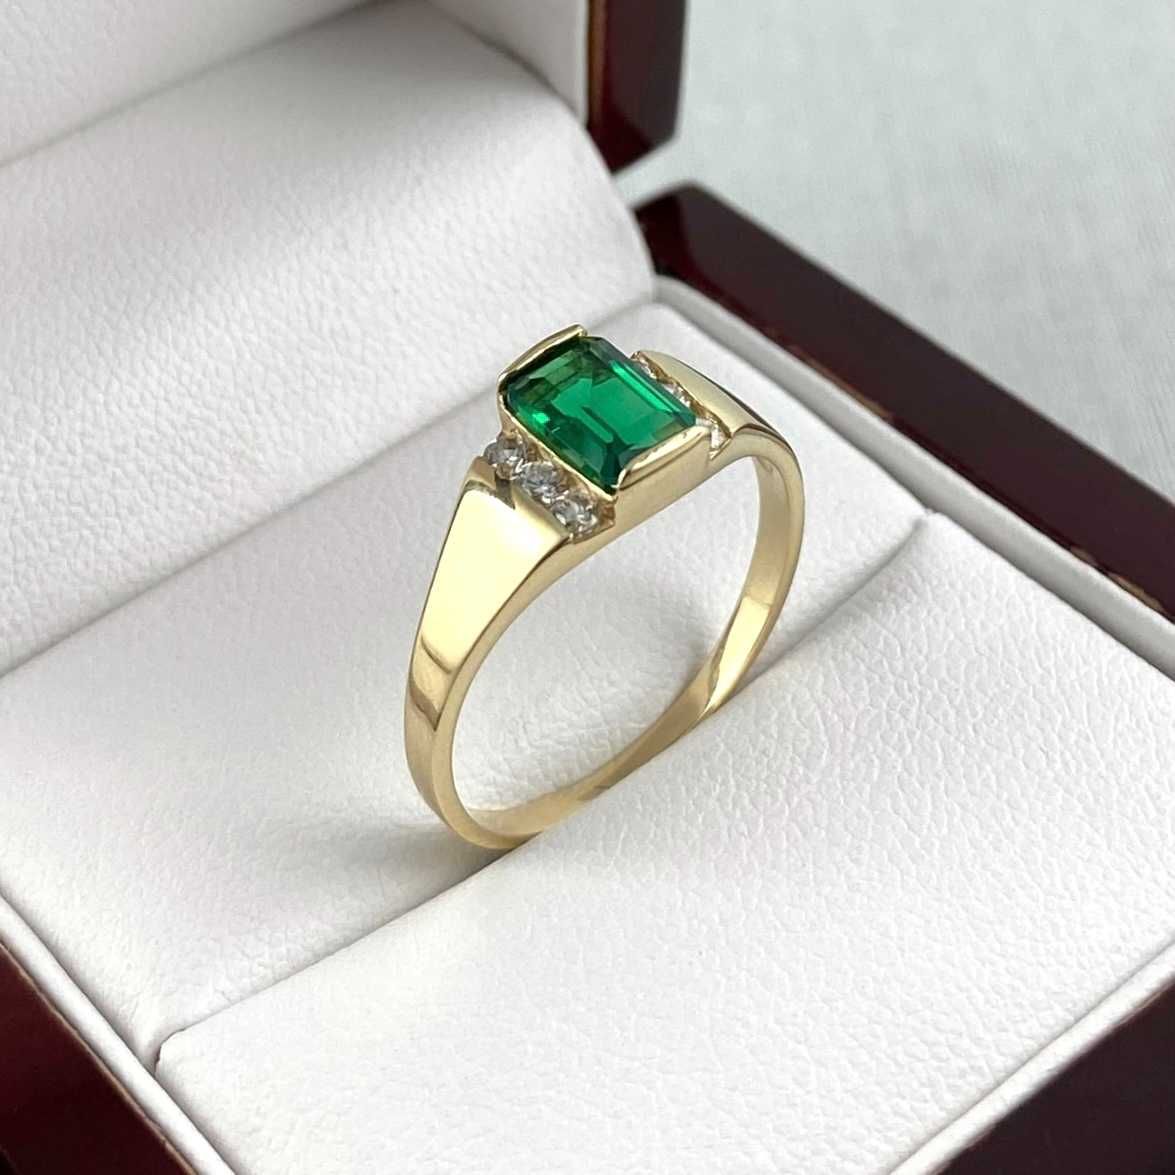 Cudowny ZŁOTY pierścionek z zieloną cyrkonią PR. 585 (14K) rozmiar 18